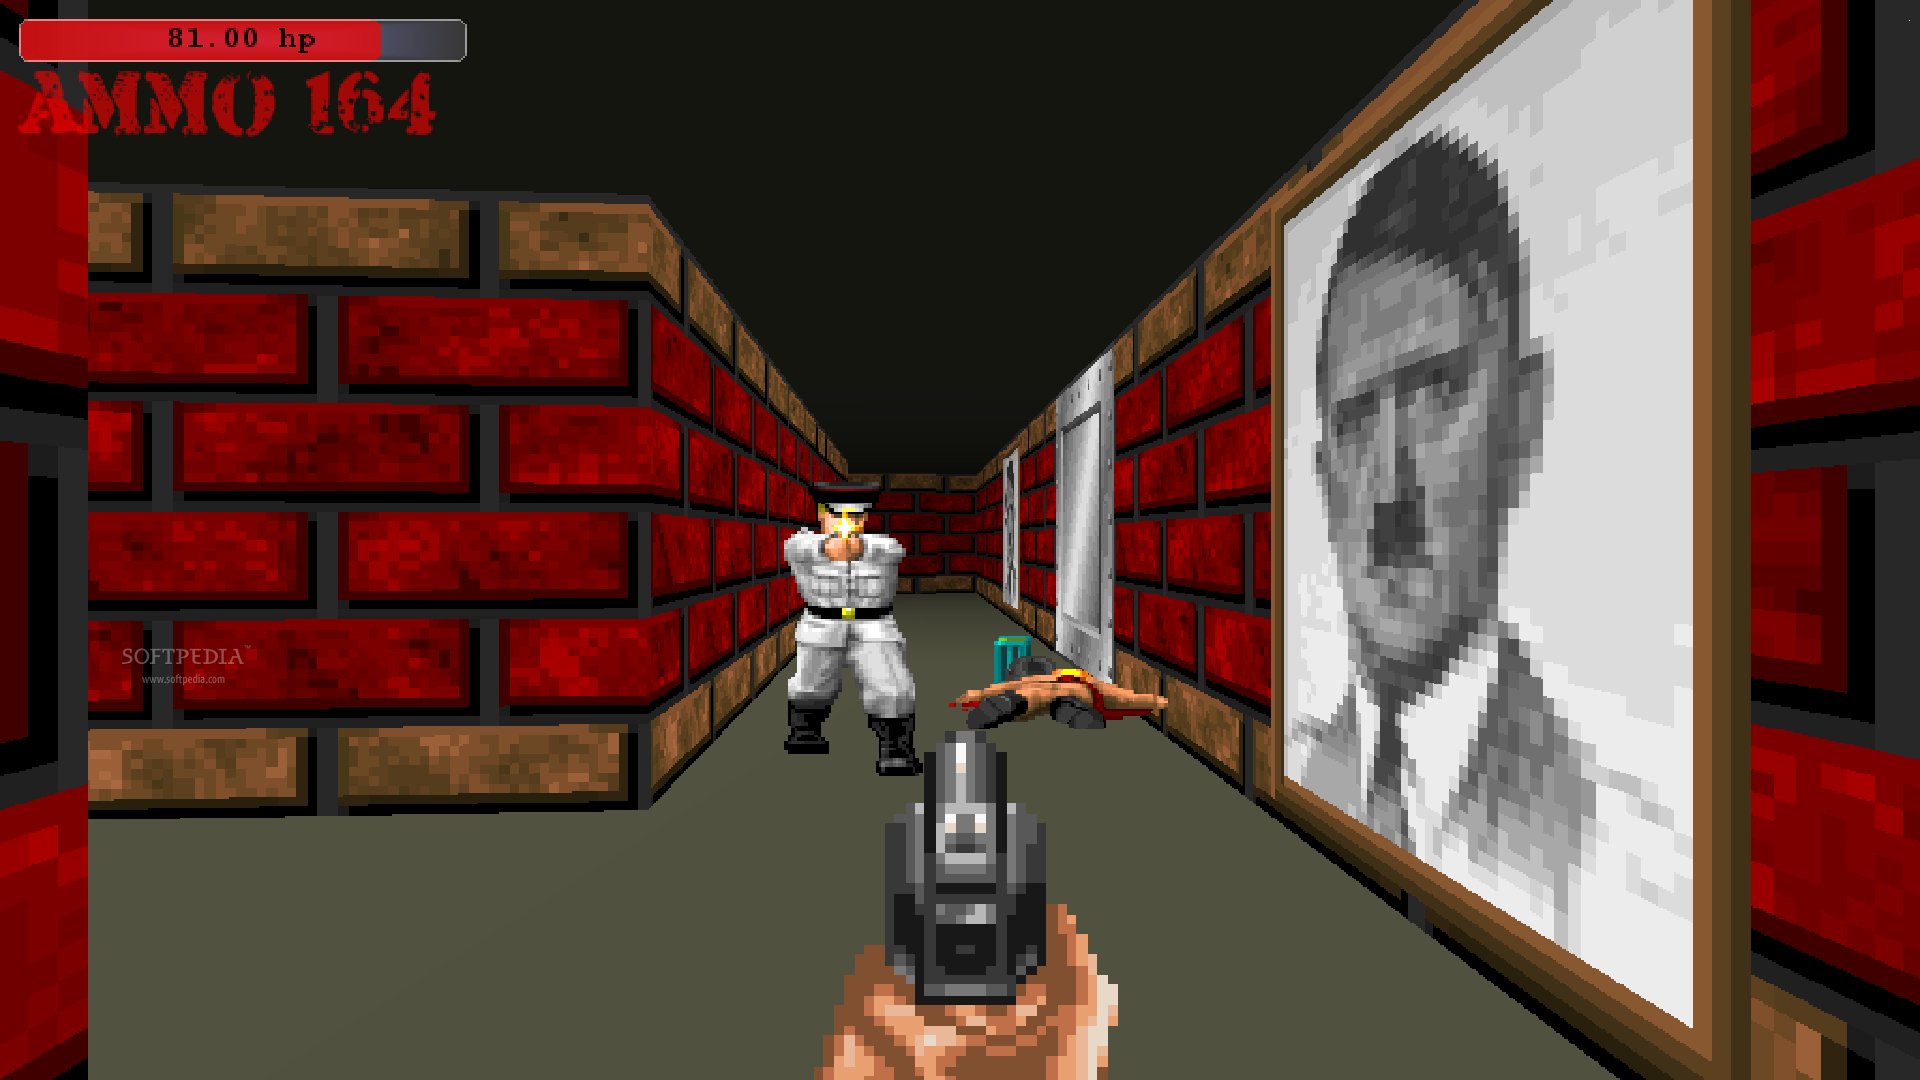 Wolfenstein 3d - Spear of Destiny Game Free Download